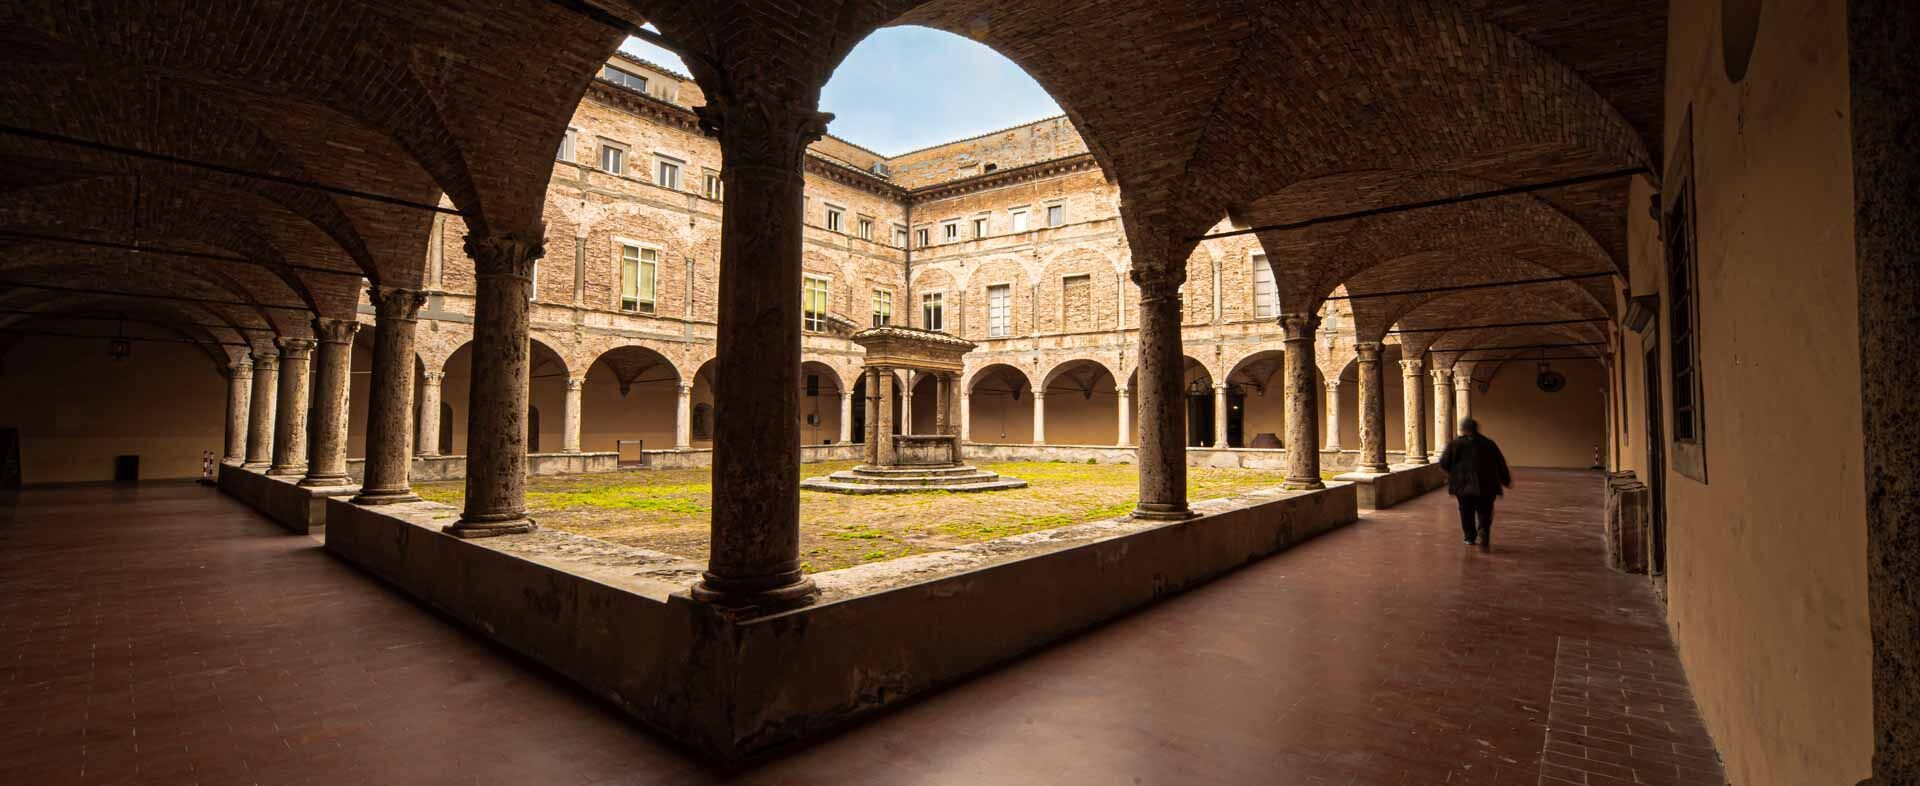 Университет Перуджа основан еще в начале 14 века